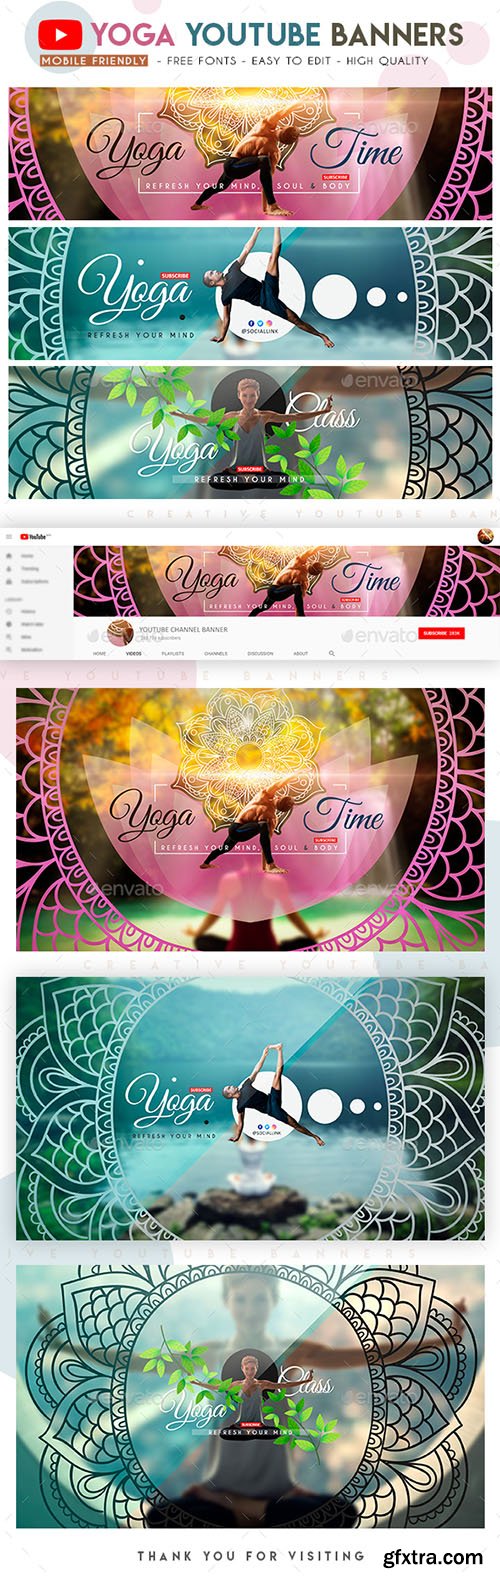 Yoga YouTube Banners 22841110